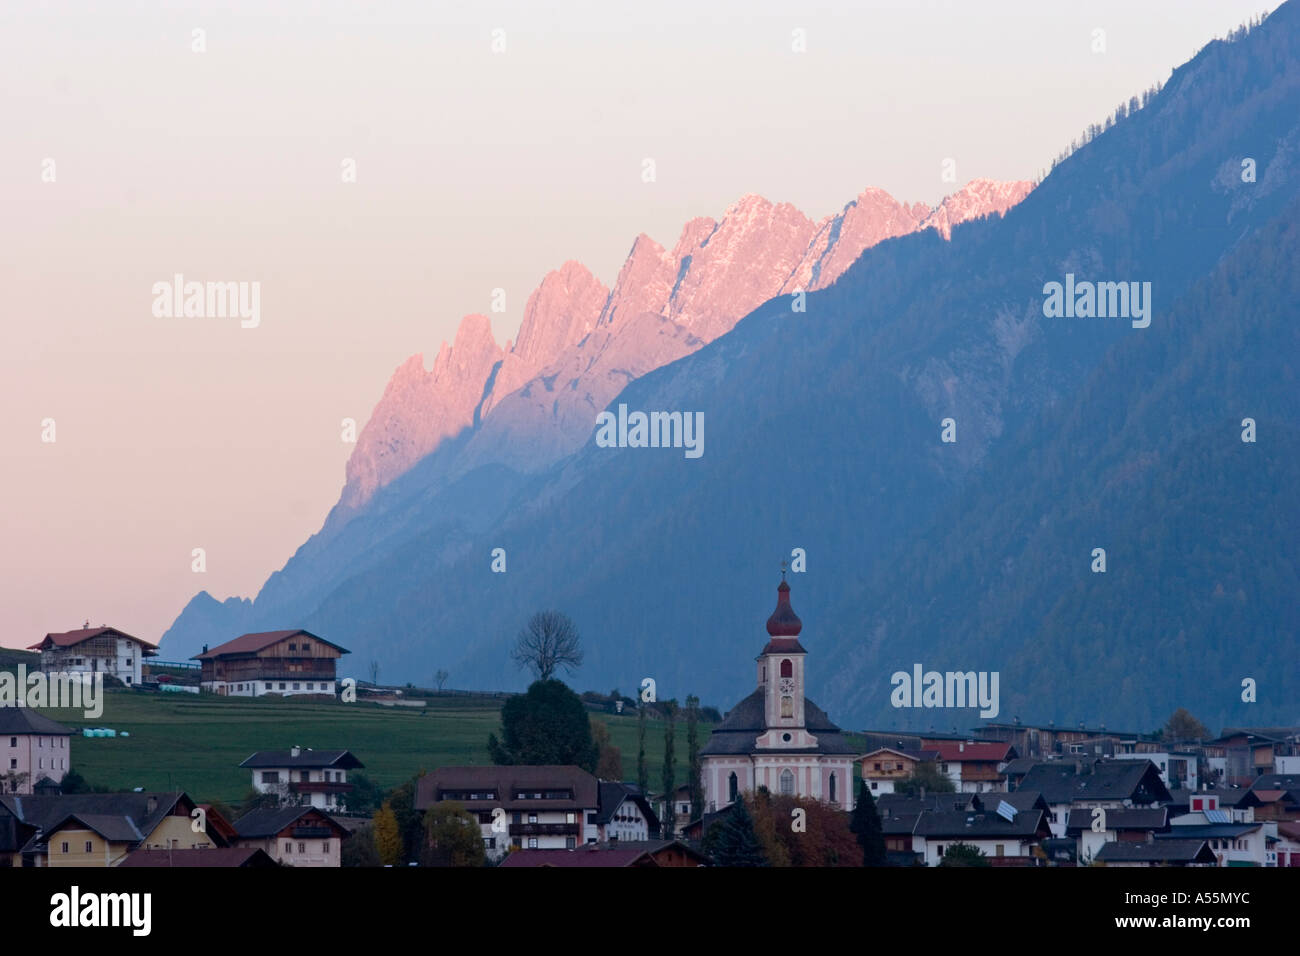 Strassen and Lienzer Dolomiten mountains in Pustertal valley Tyrol Austria Stock Photo